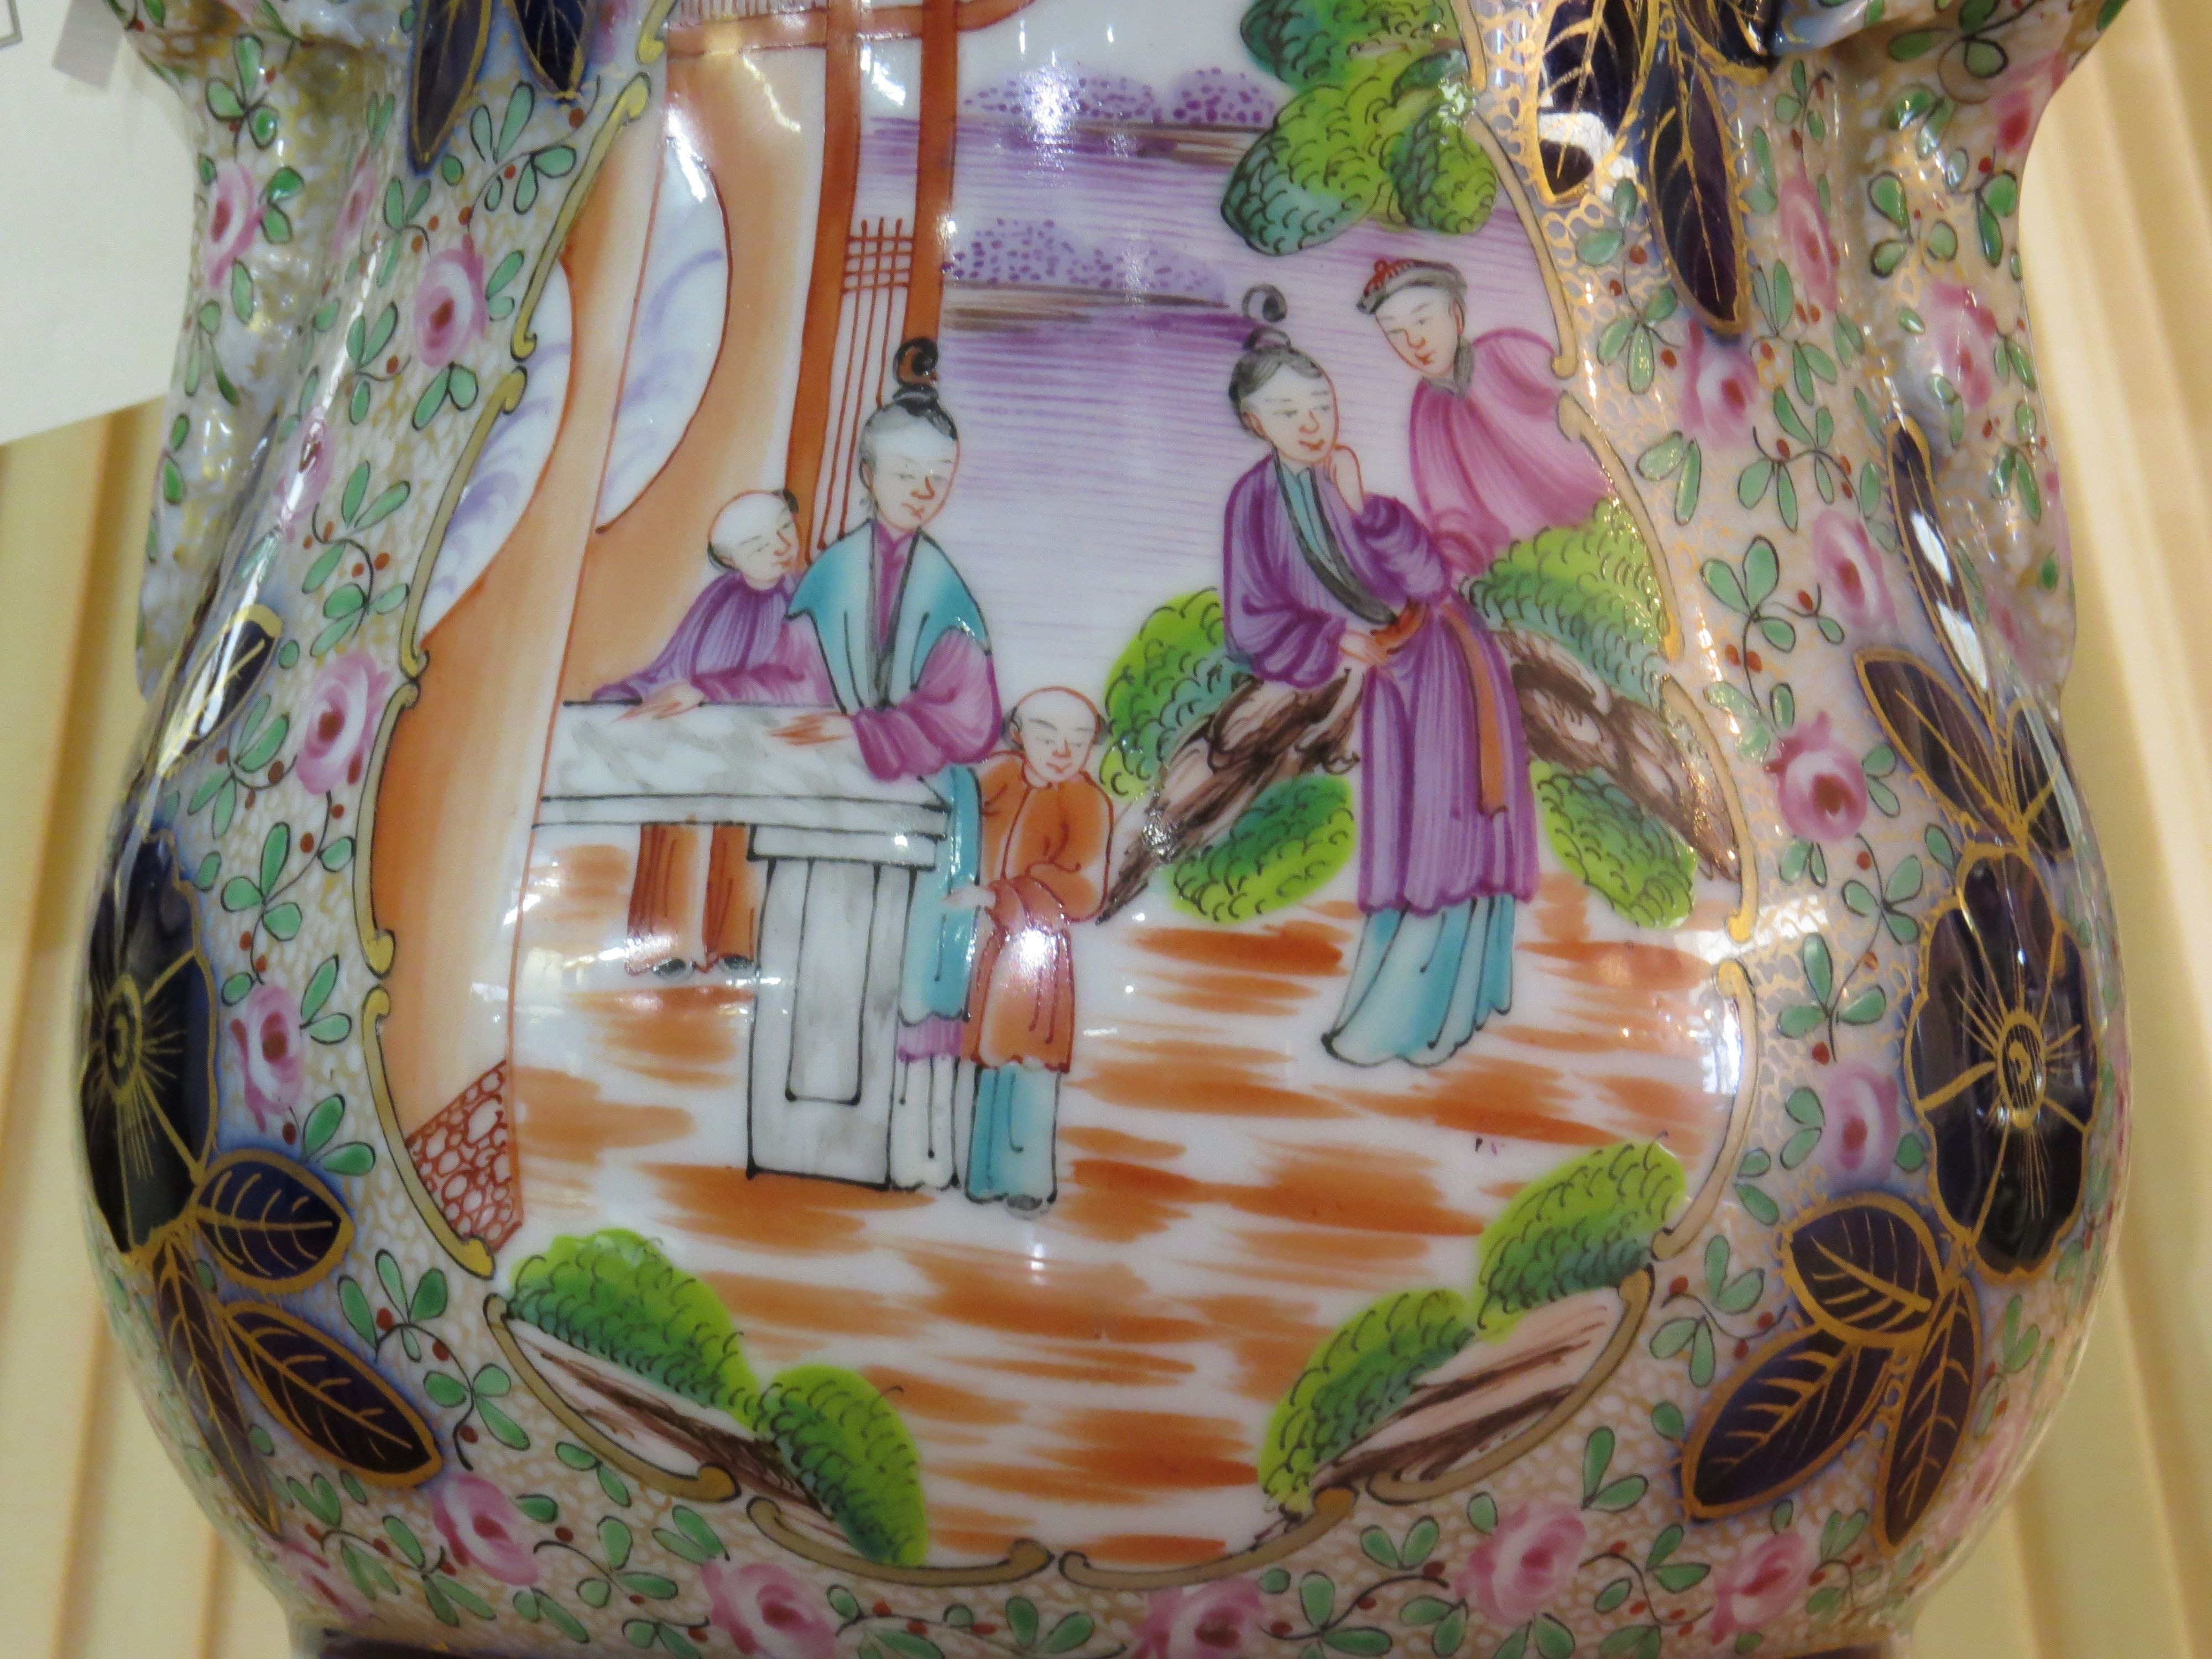 English Porcelain Lamp